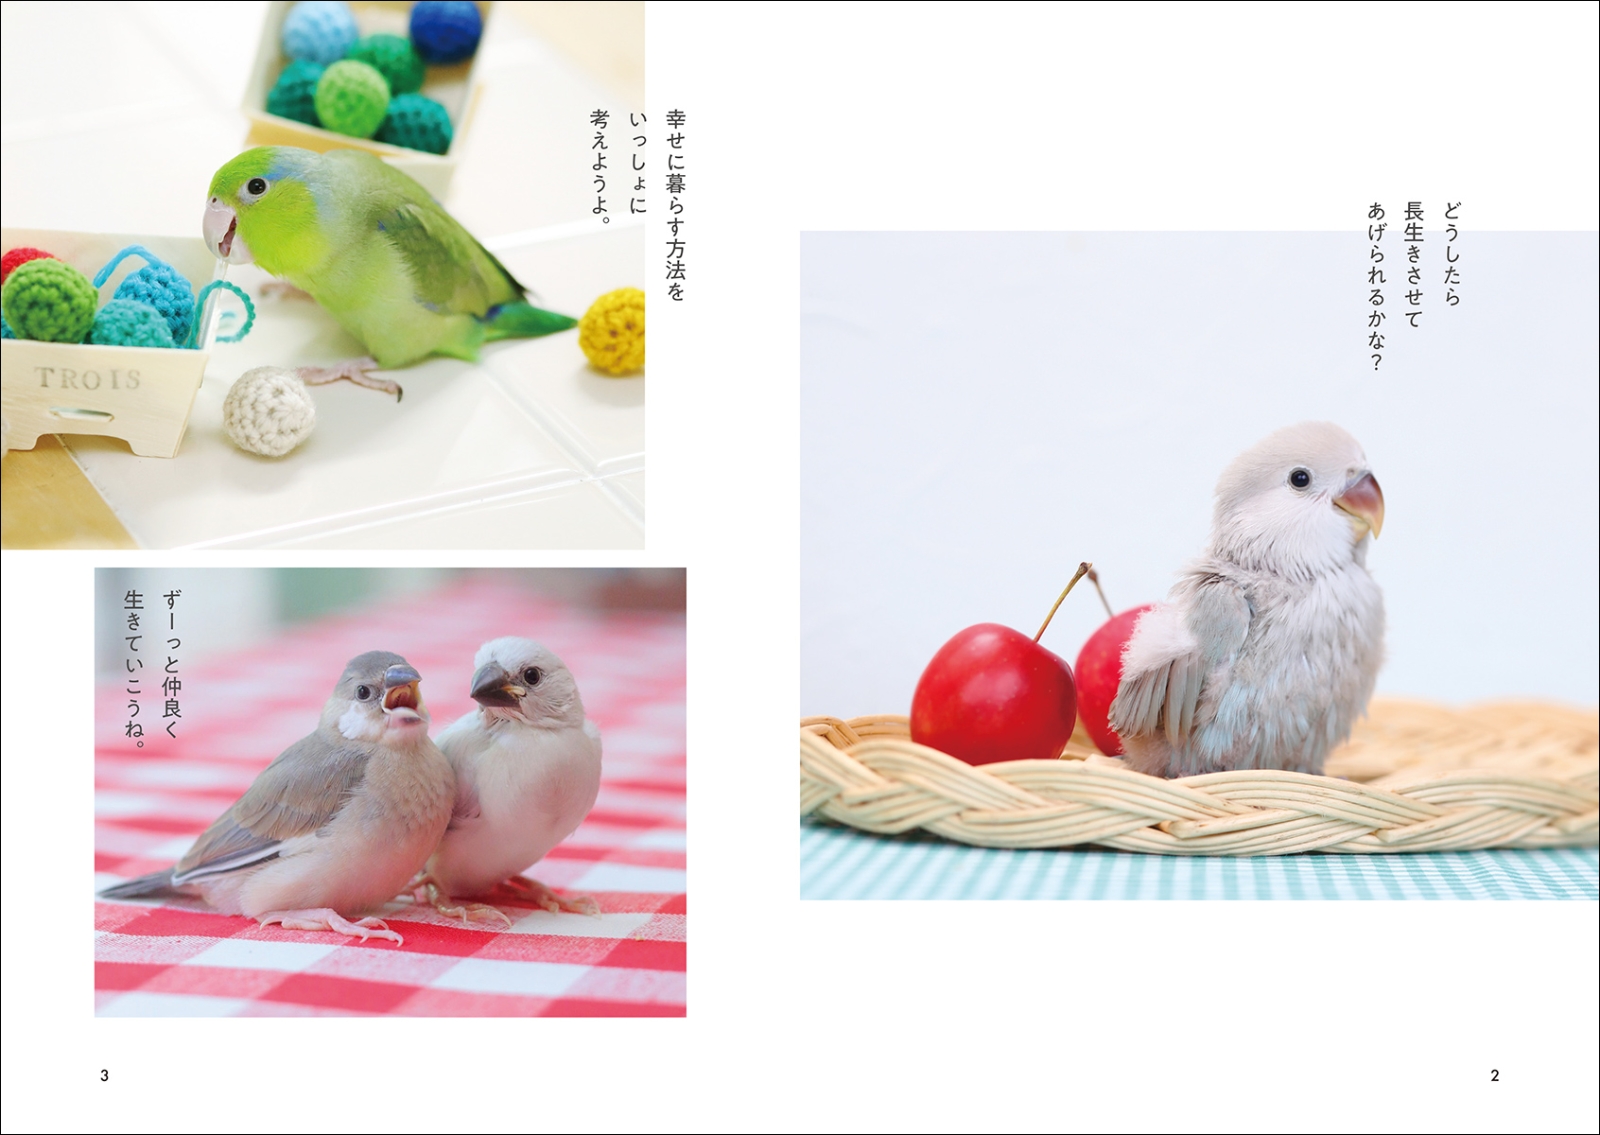 楽天ブックス: 長生きする鳥の育てかた - 愛鳥と末永く幸せに暮らす